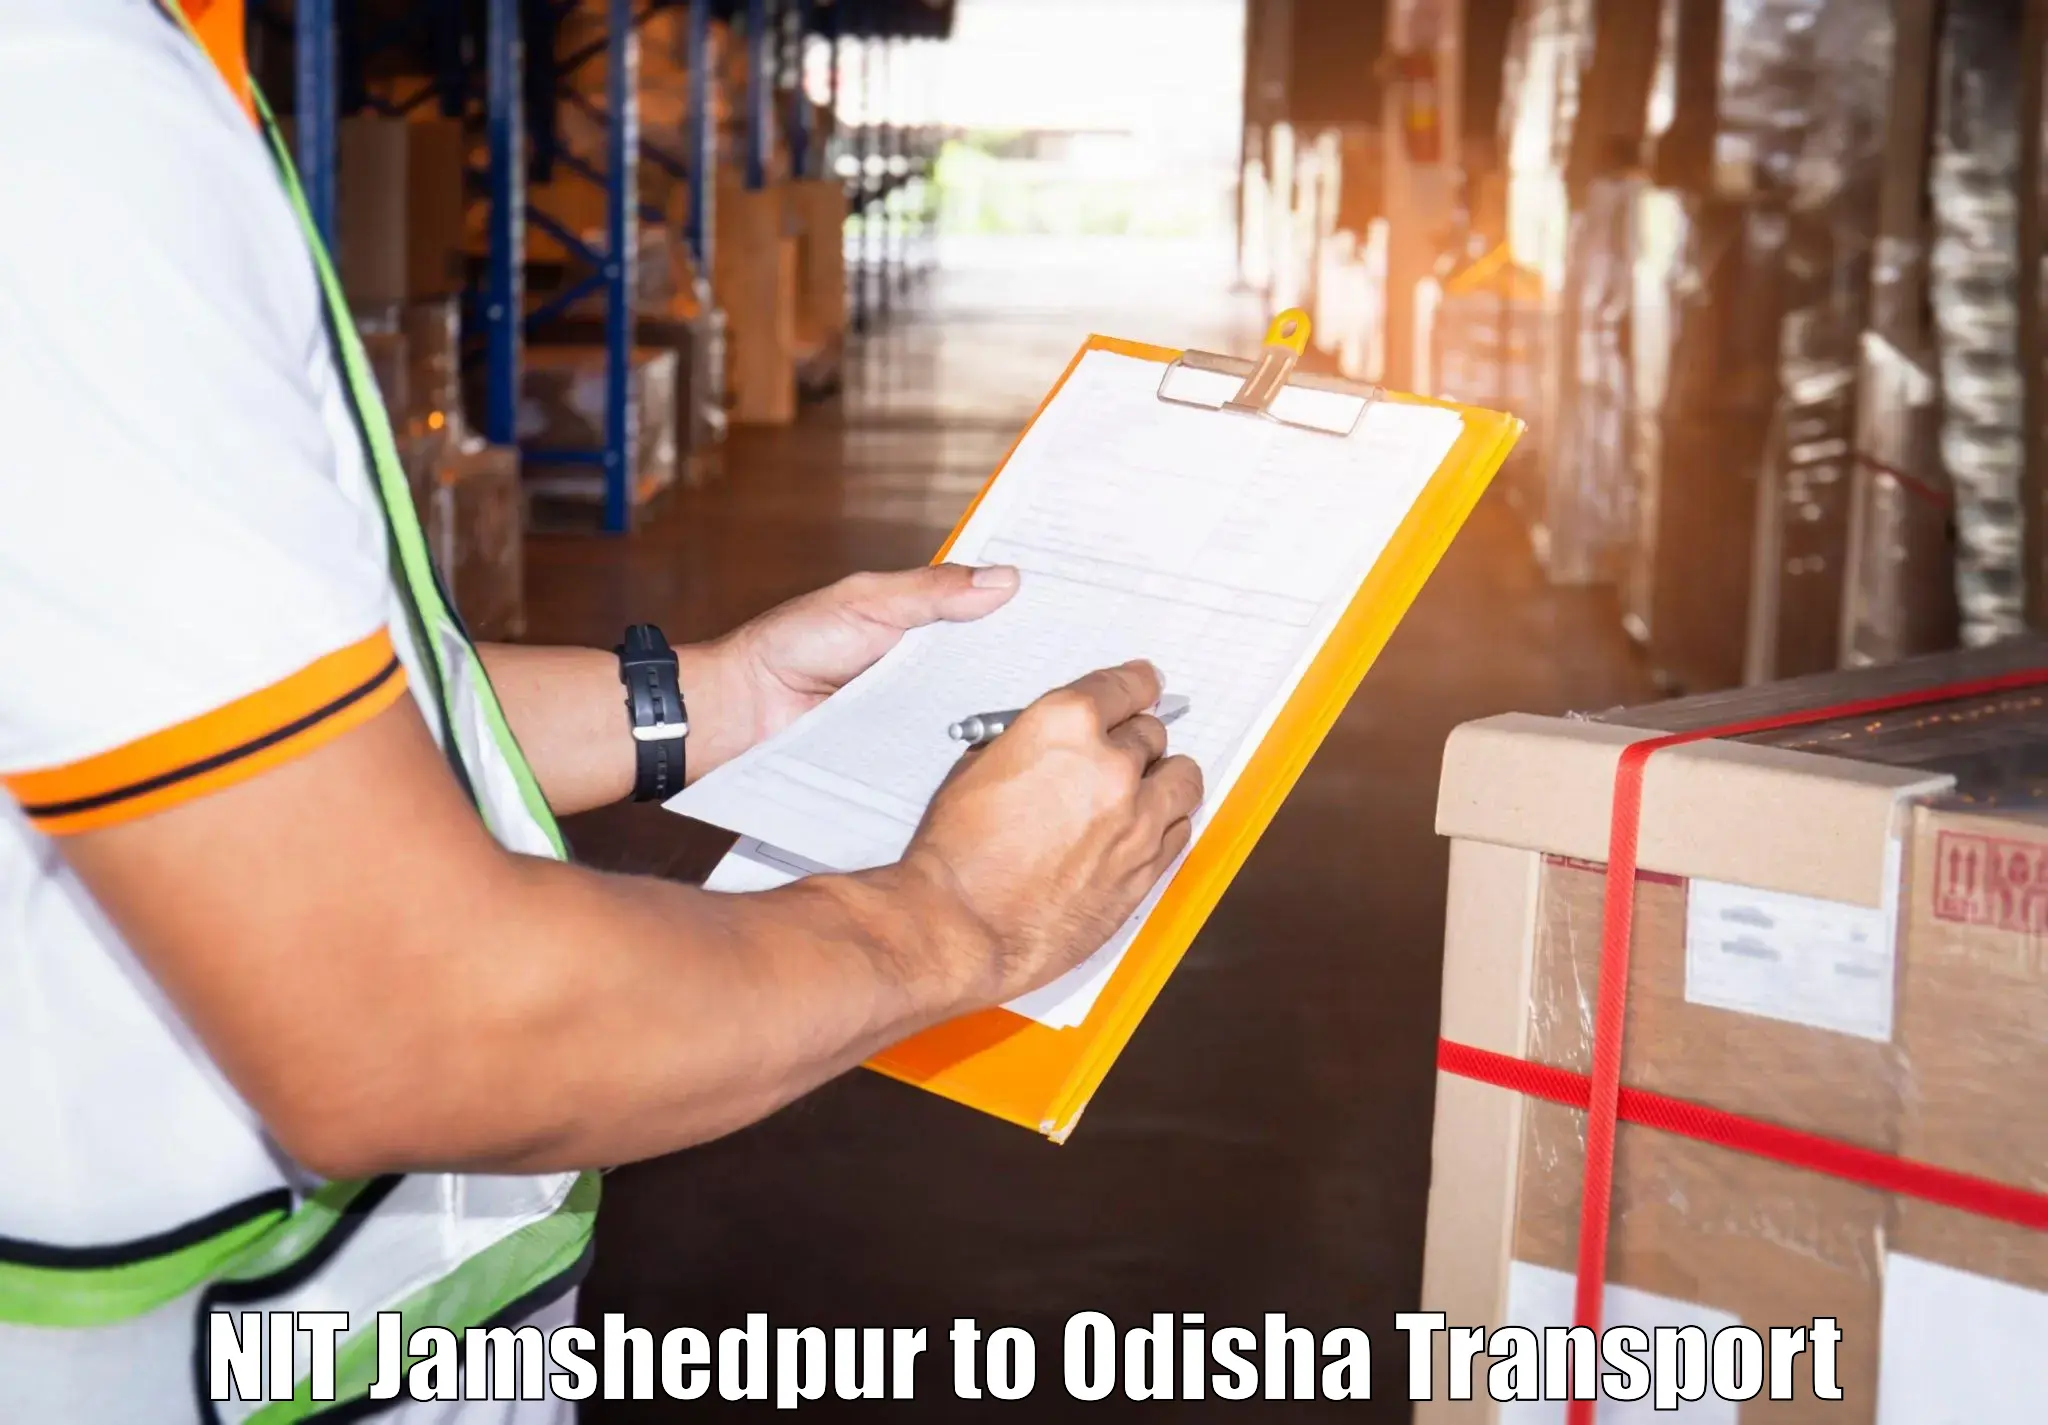 Land transport services in NIT Jamshedpur to Jaleswar